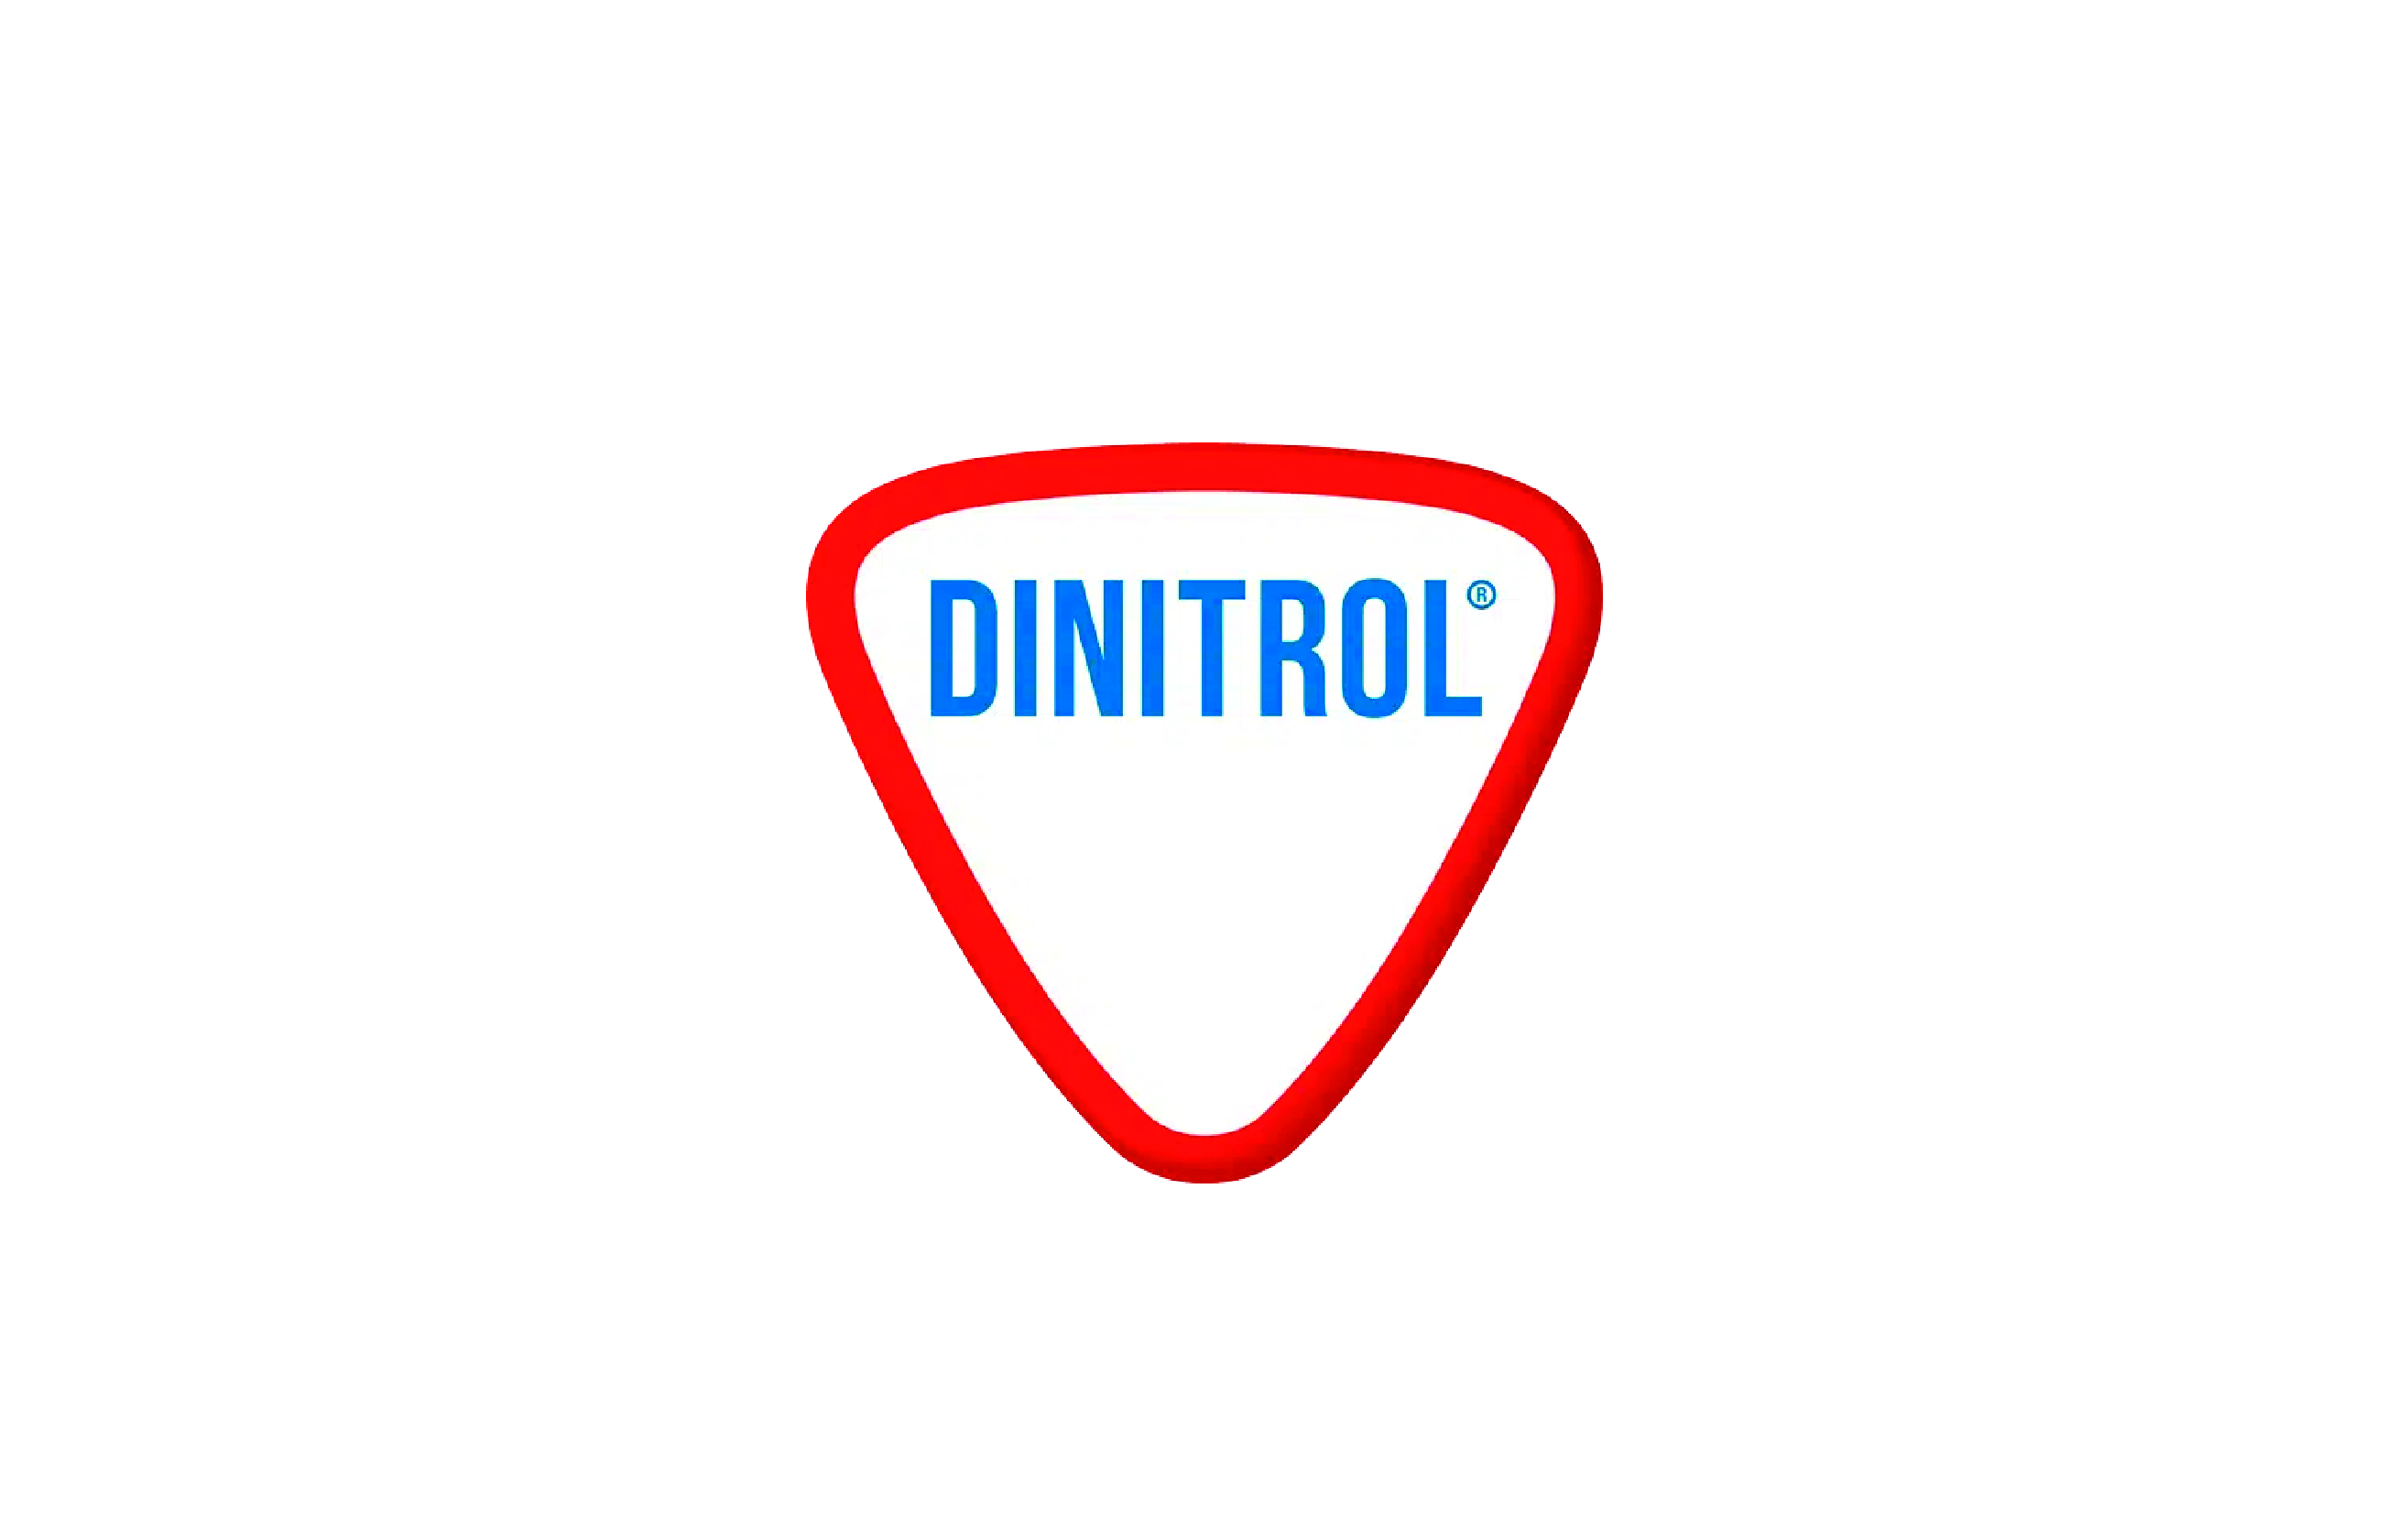 Dinitrol